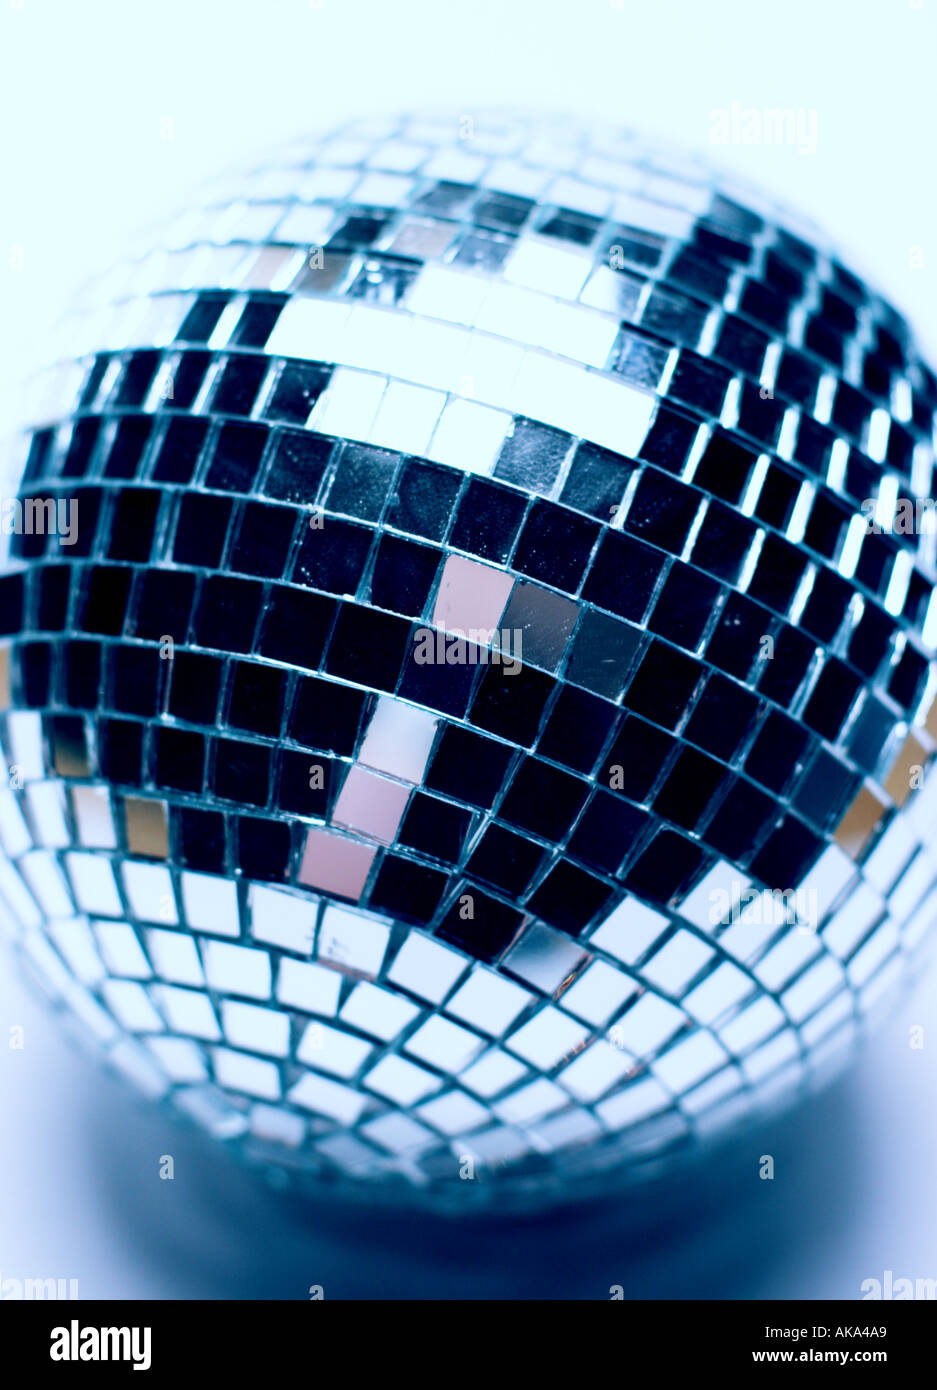 A disco mirror ball Stock Photo